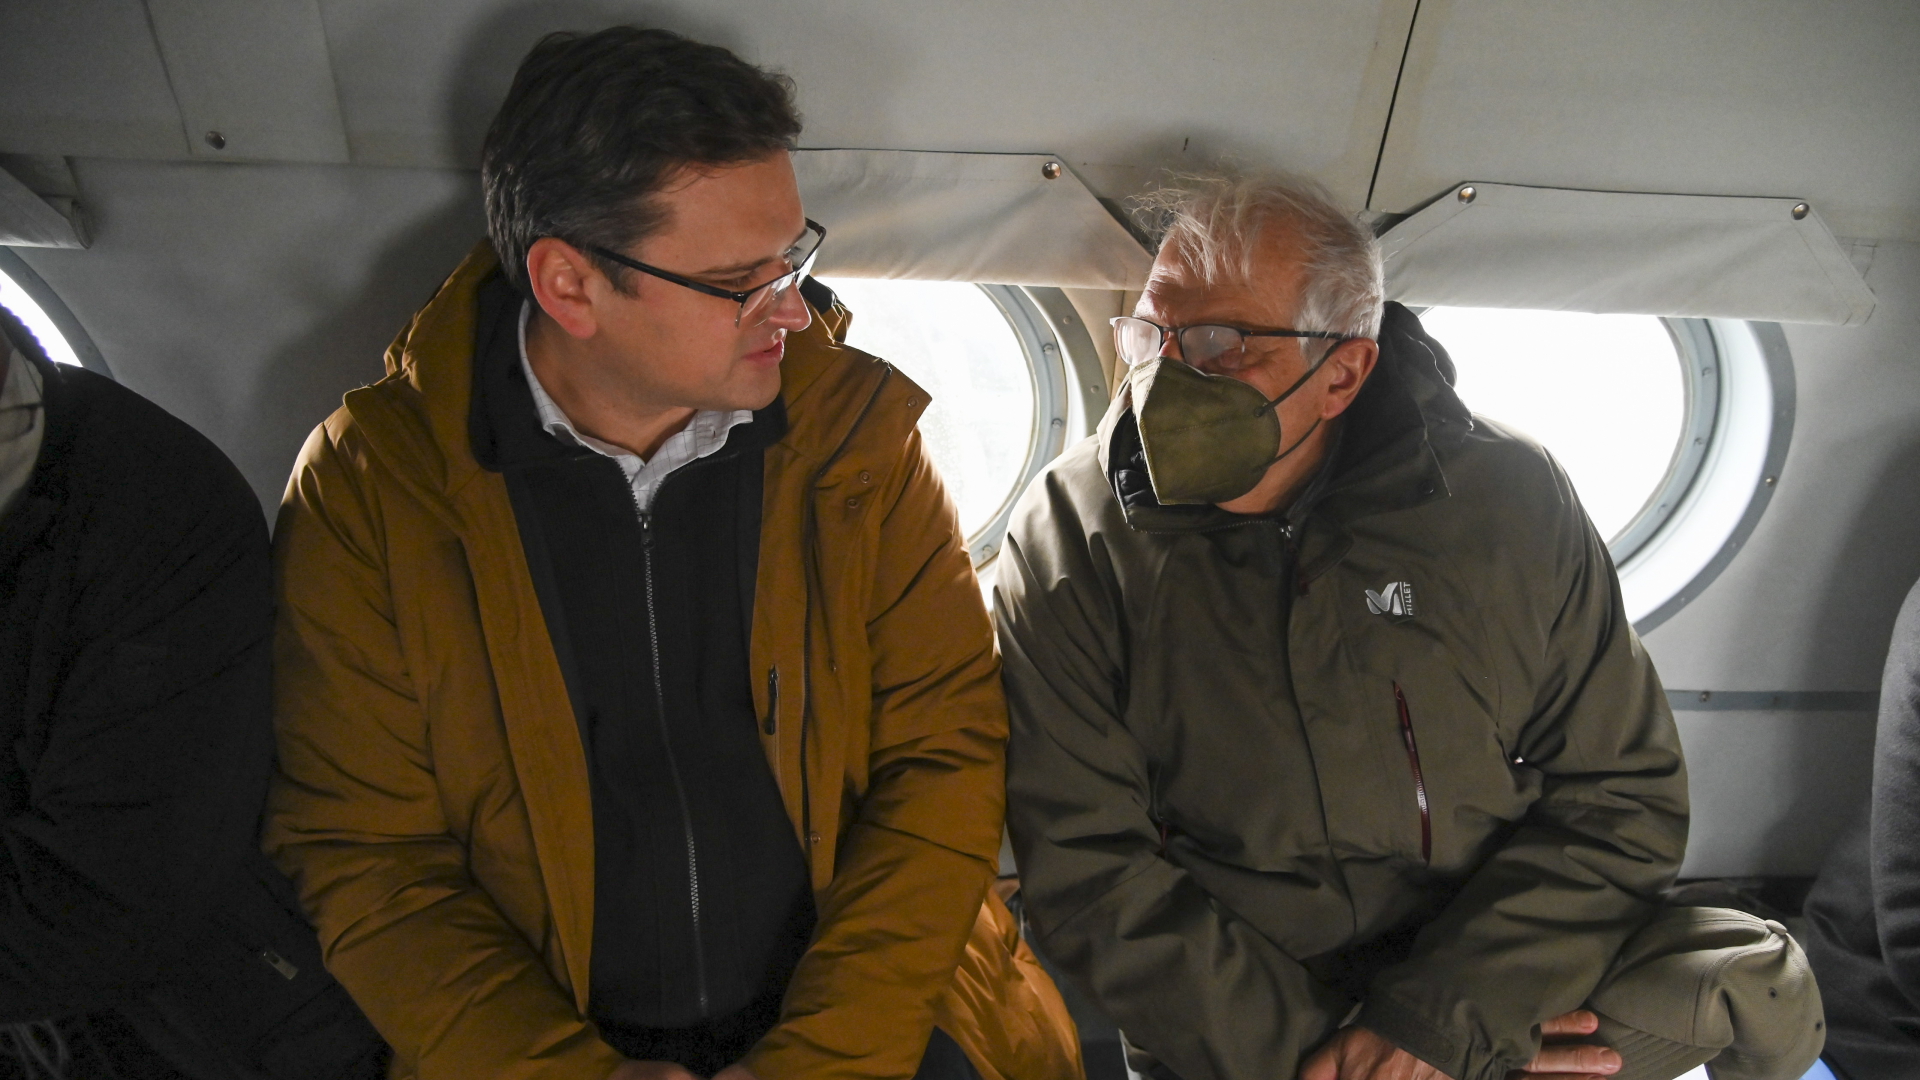 Der EU-Außenbeauftragte Josep Borrell (rechts) spricht mit dem ukrainischen Außenminister Dmitri Kuleba während eines Hubschrauberflugs. | EPA